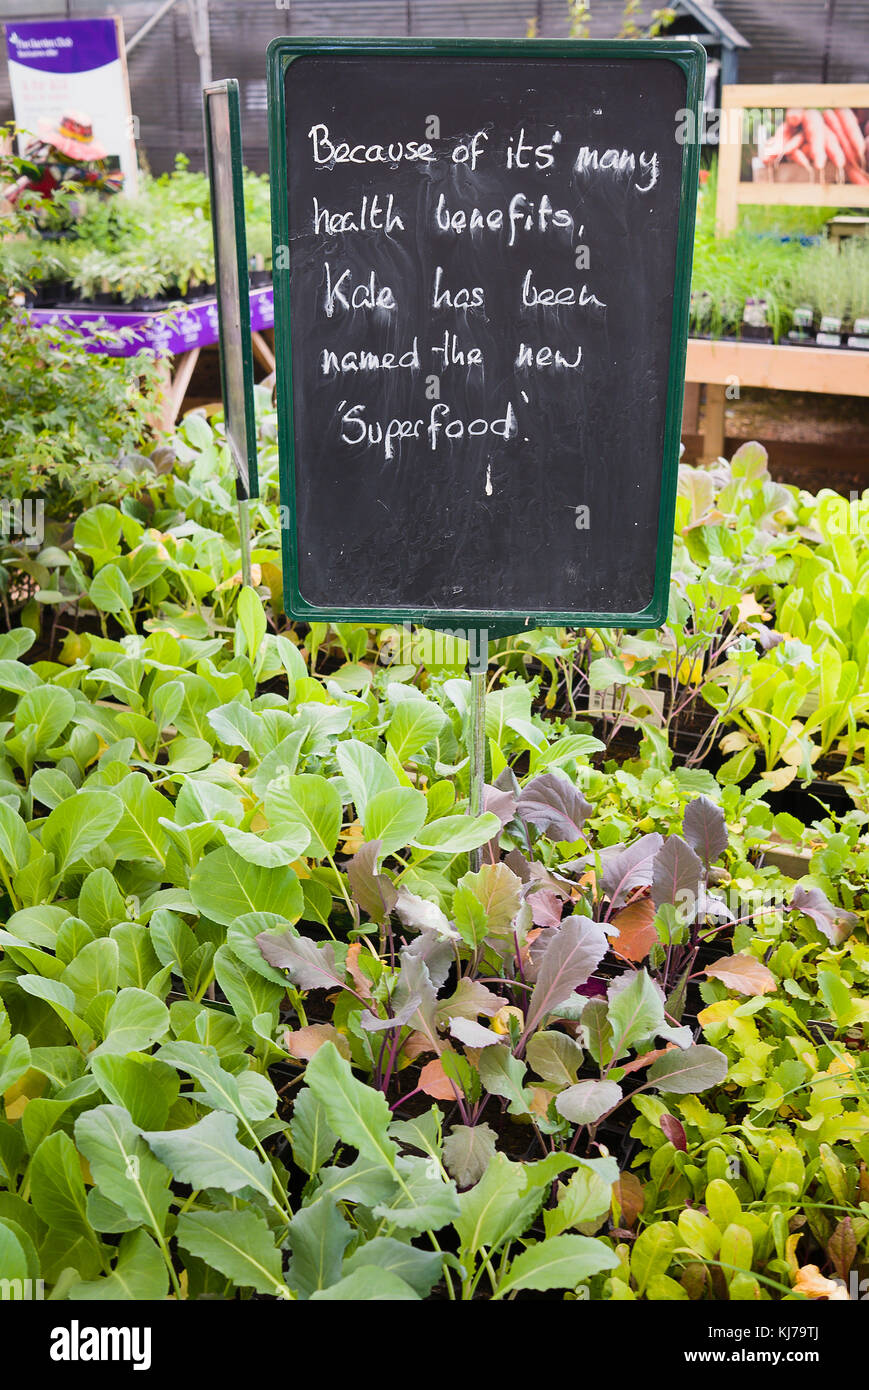 Les jeunes plants de légumes verts à la vente par l'auto-sélection avec un avis de persuasion exaltent les vertus santé de Kale en tant qu'home aliments au Royaume-Uni Banque D'Images